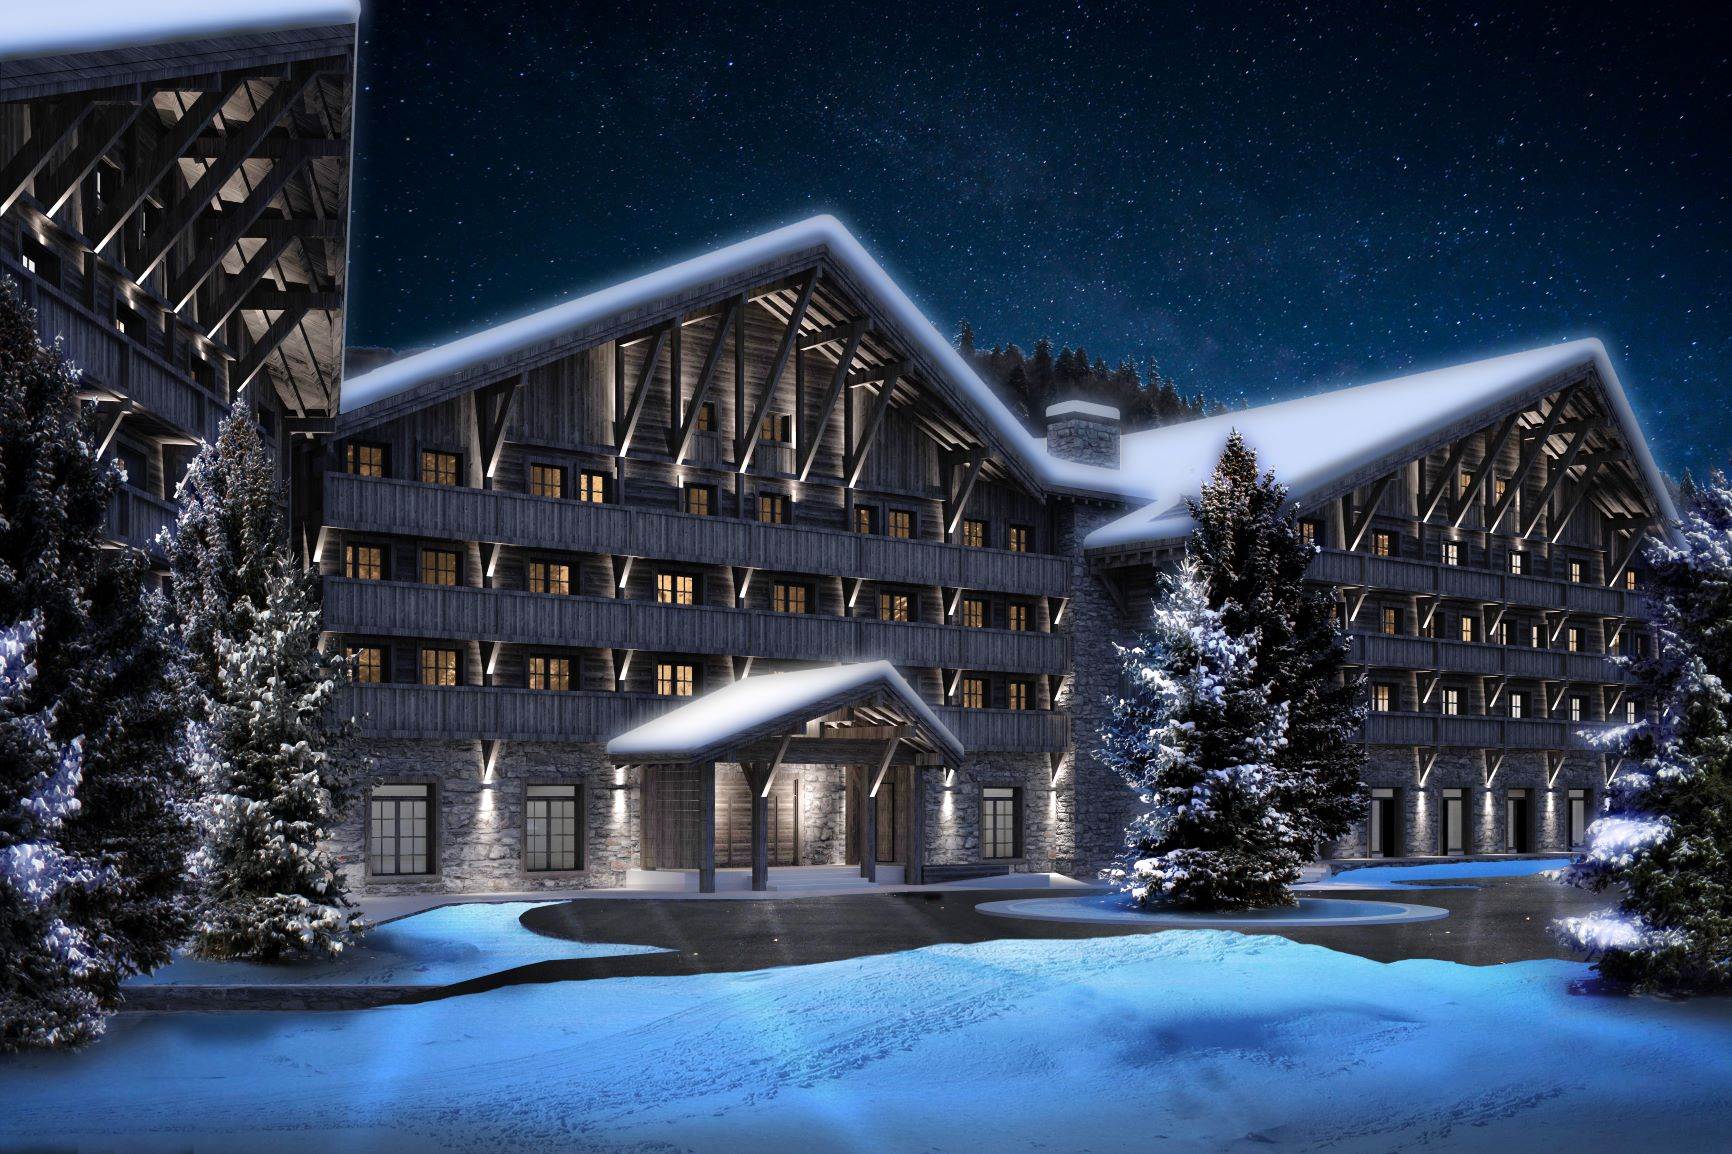  Kolašin Resort i Spa počeo je sa izgradnjom luksuznog Ski Resorta 